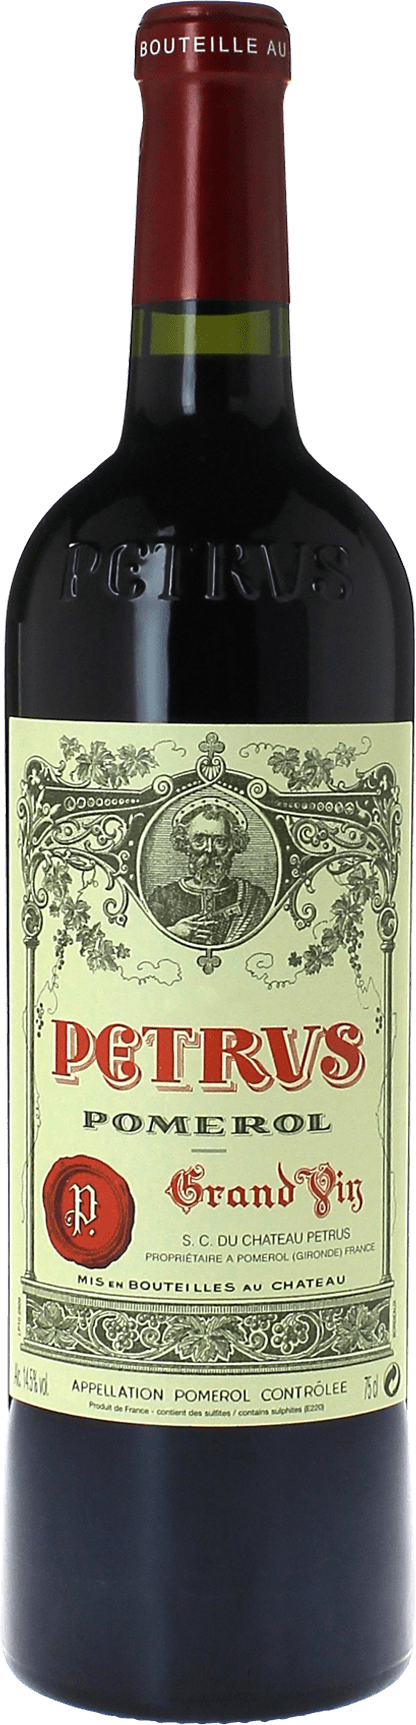 Petrus pomerol 2015  Pomerol, Bordeaux rouge